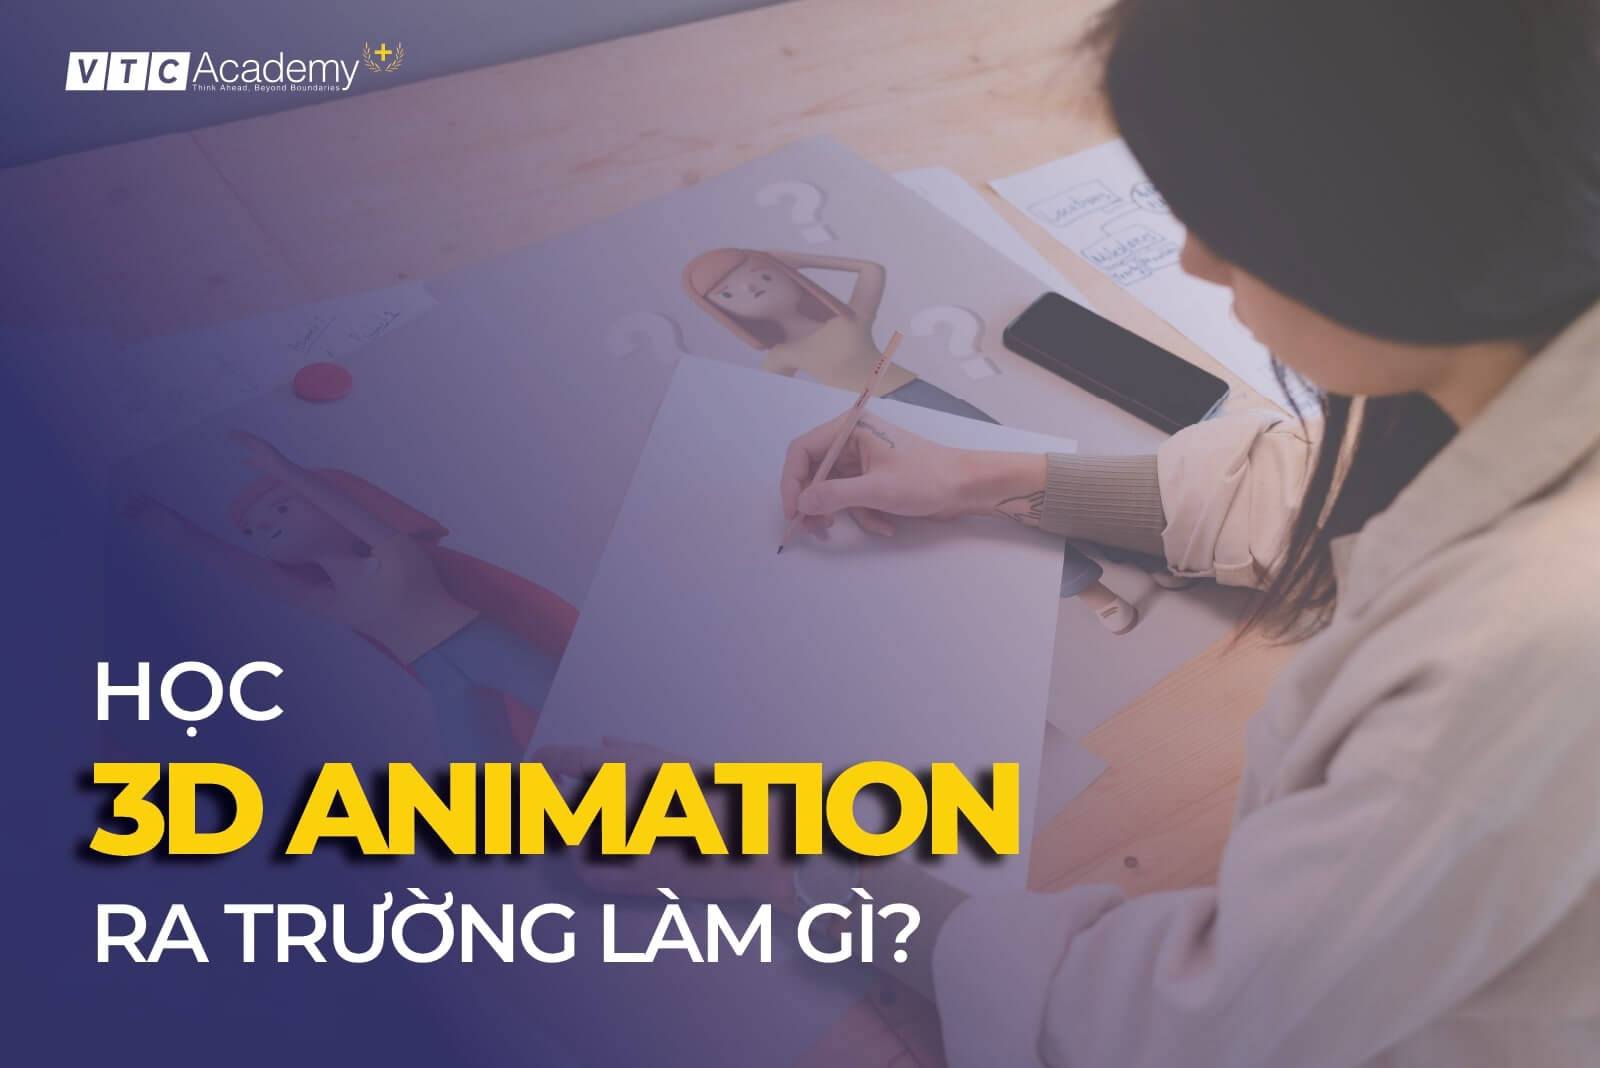 Học 3D Animation ra làm gì? Chi tiết công việc của 3D Animator